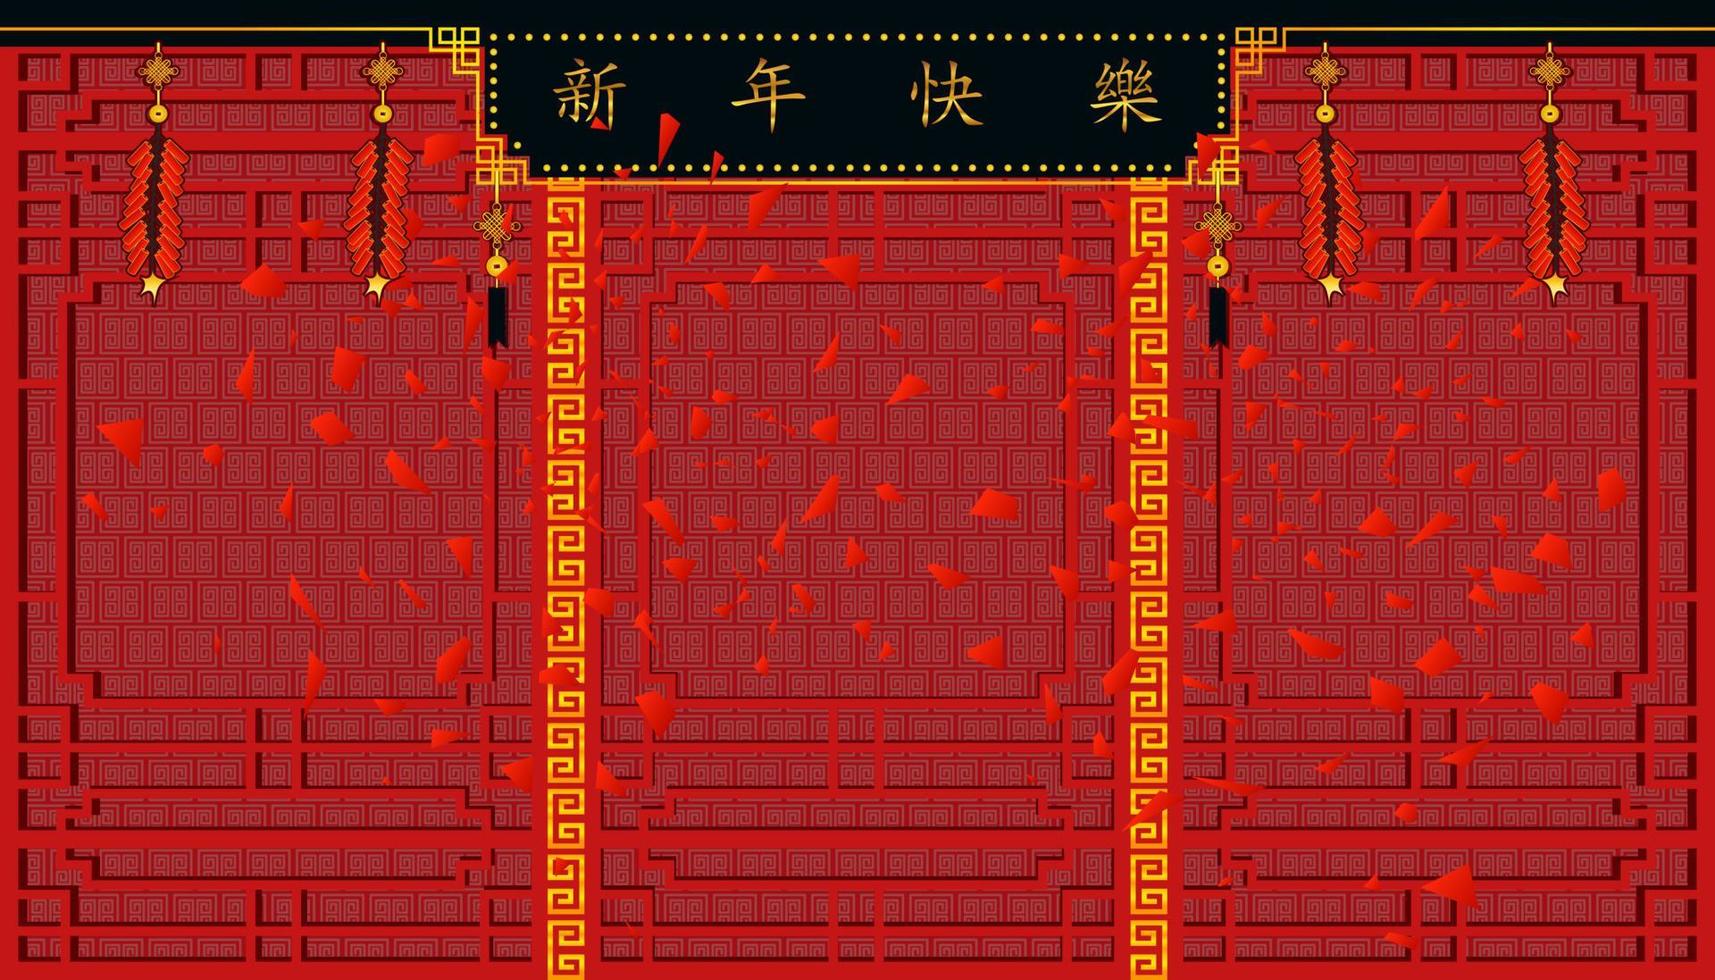 gelukkig chinees nieuwjaar. teken van xin nian kual le karakters voor cny festival en voetzoekers op de top en mooie muur pattern.holiday categorie. vector